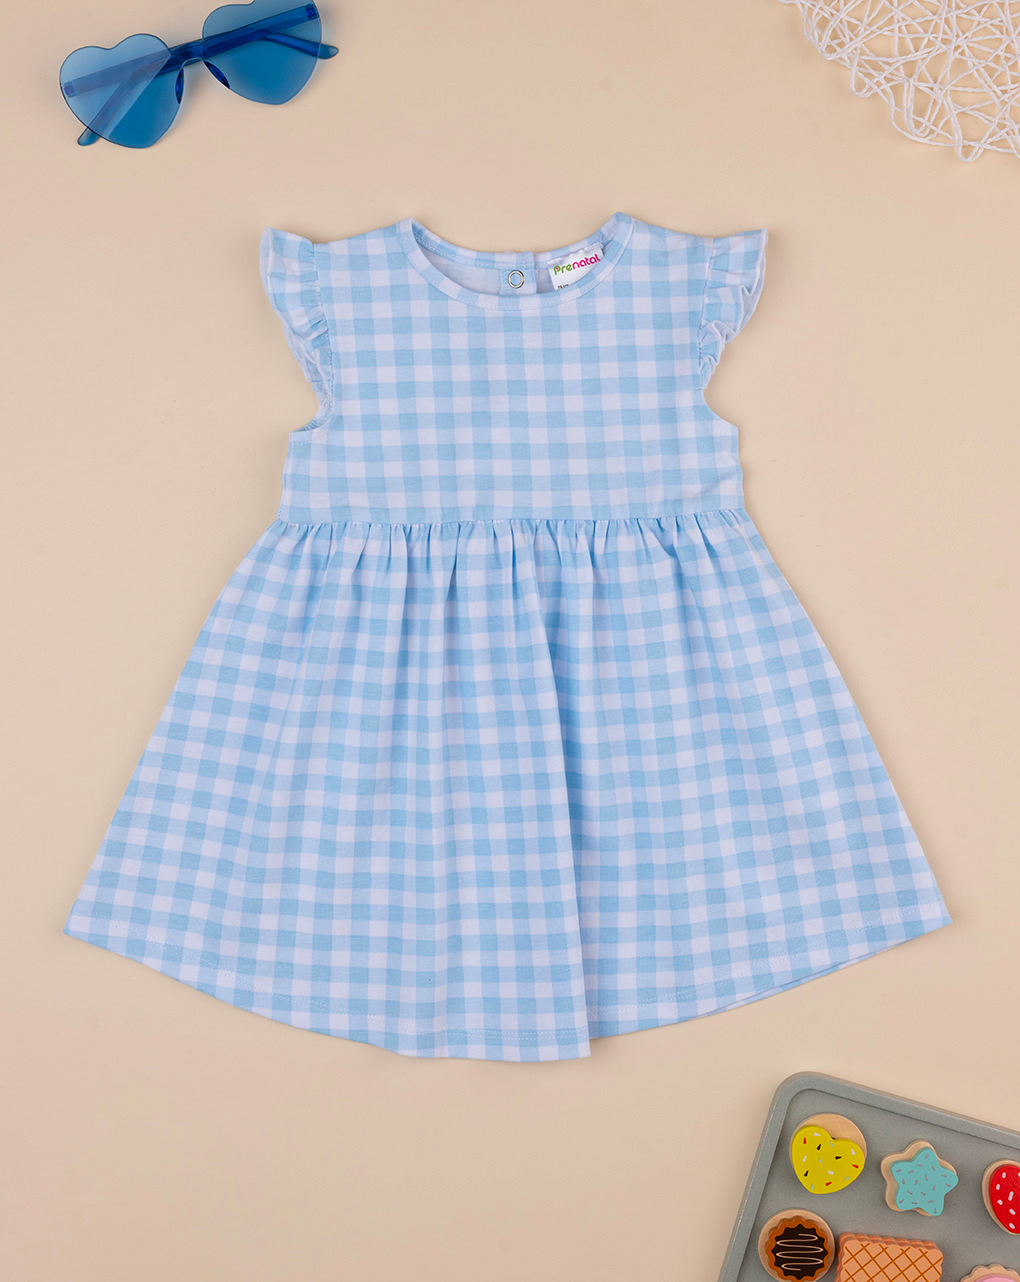 βρεφικό φόρεμα καρό γαλάζιο/λευκό για κορίτσι